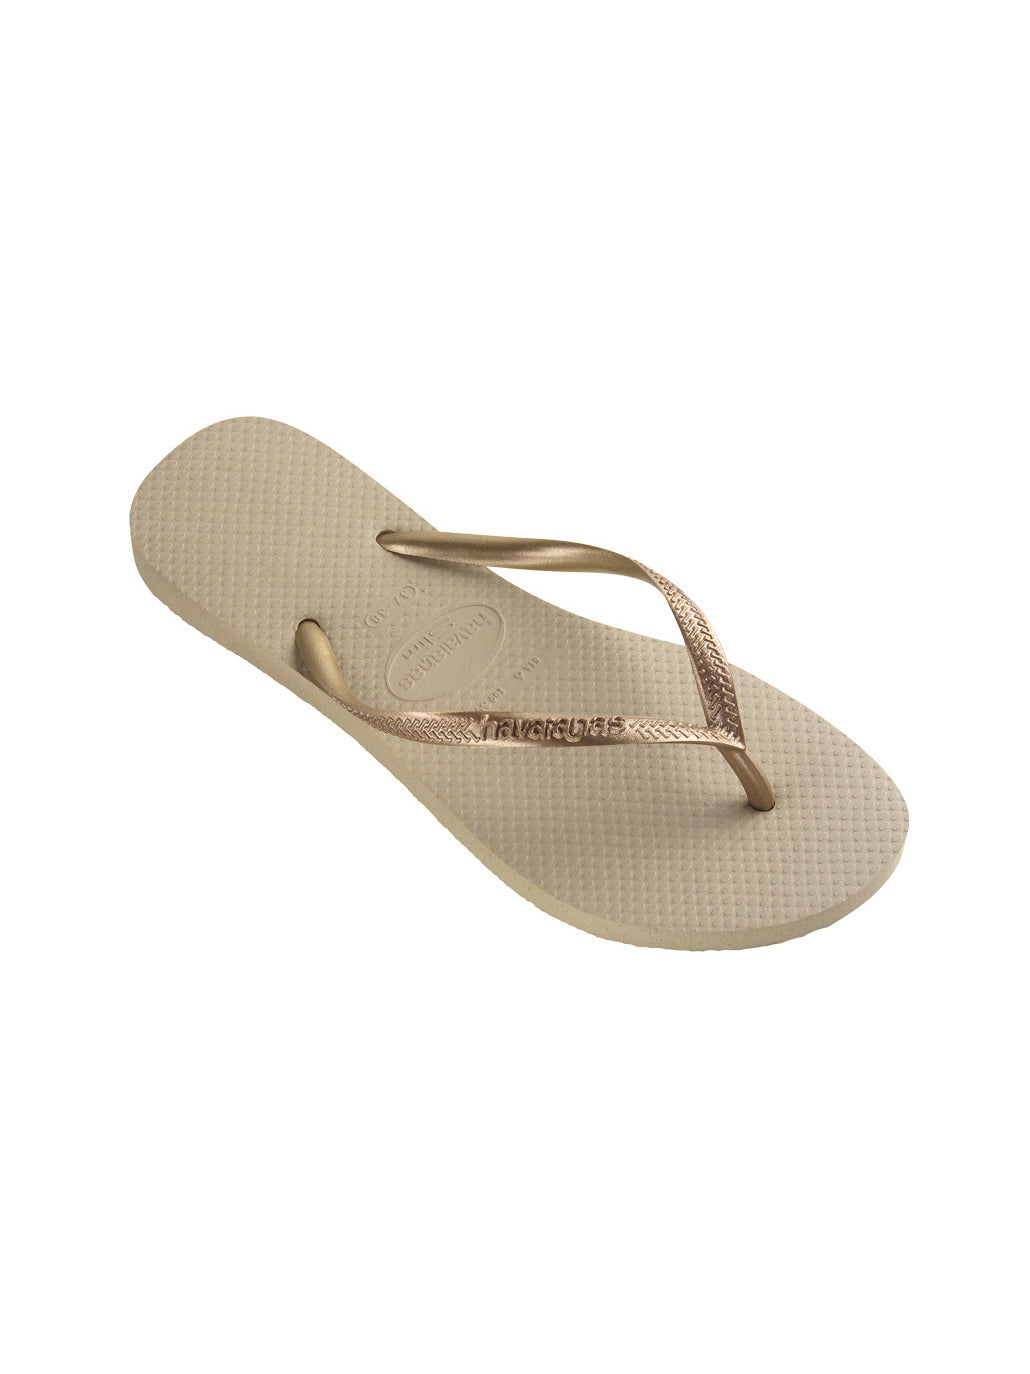 Havaianas Slim Sandals Sand Grey/Gold